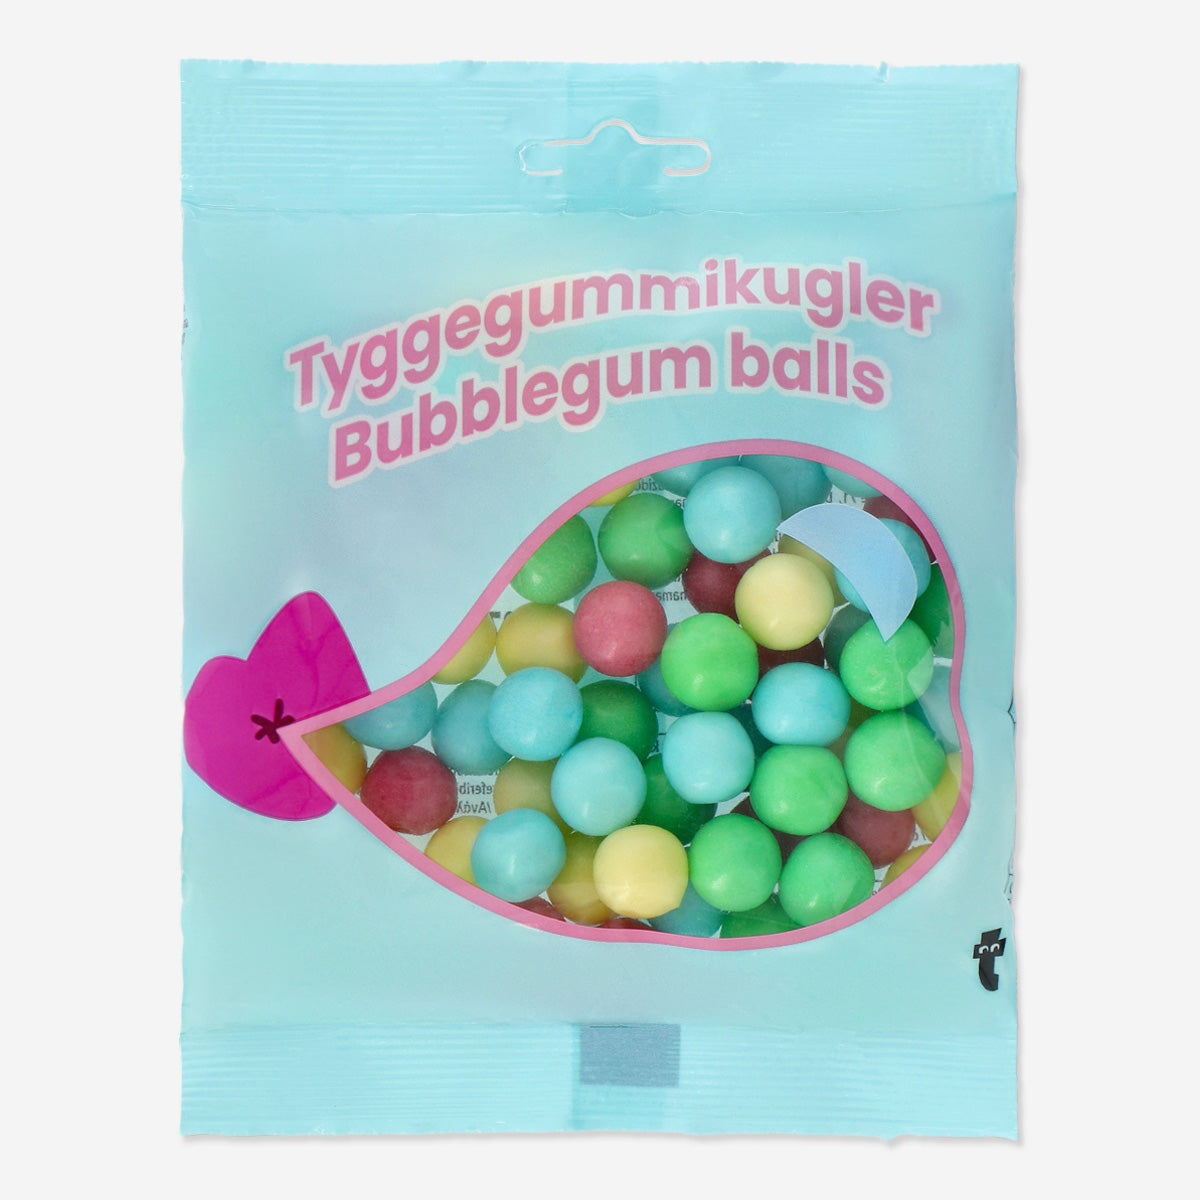 Bubblegum balls Food Flying Tiger Copenhagen 